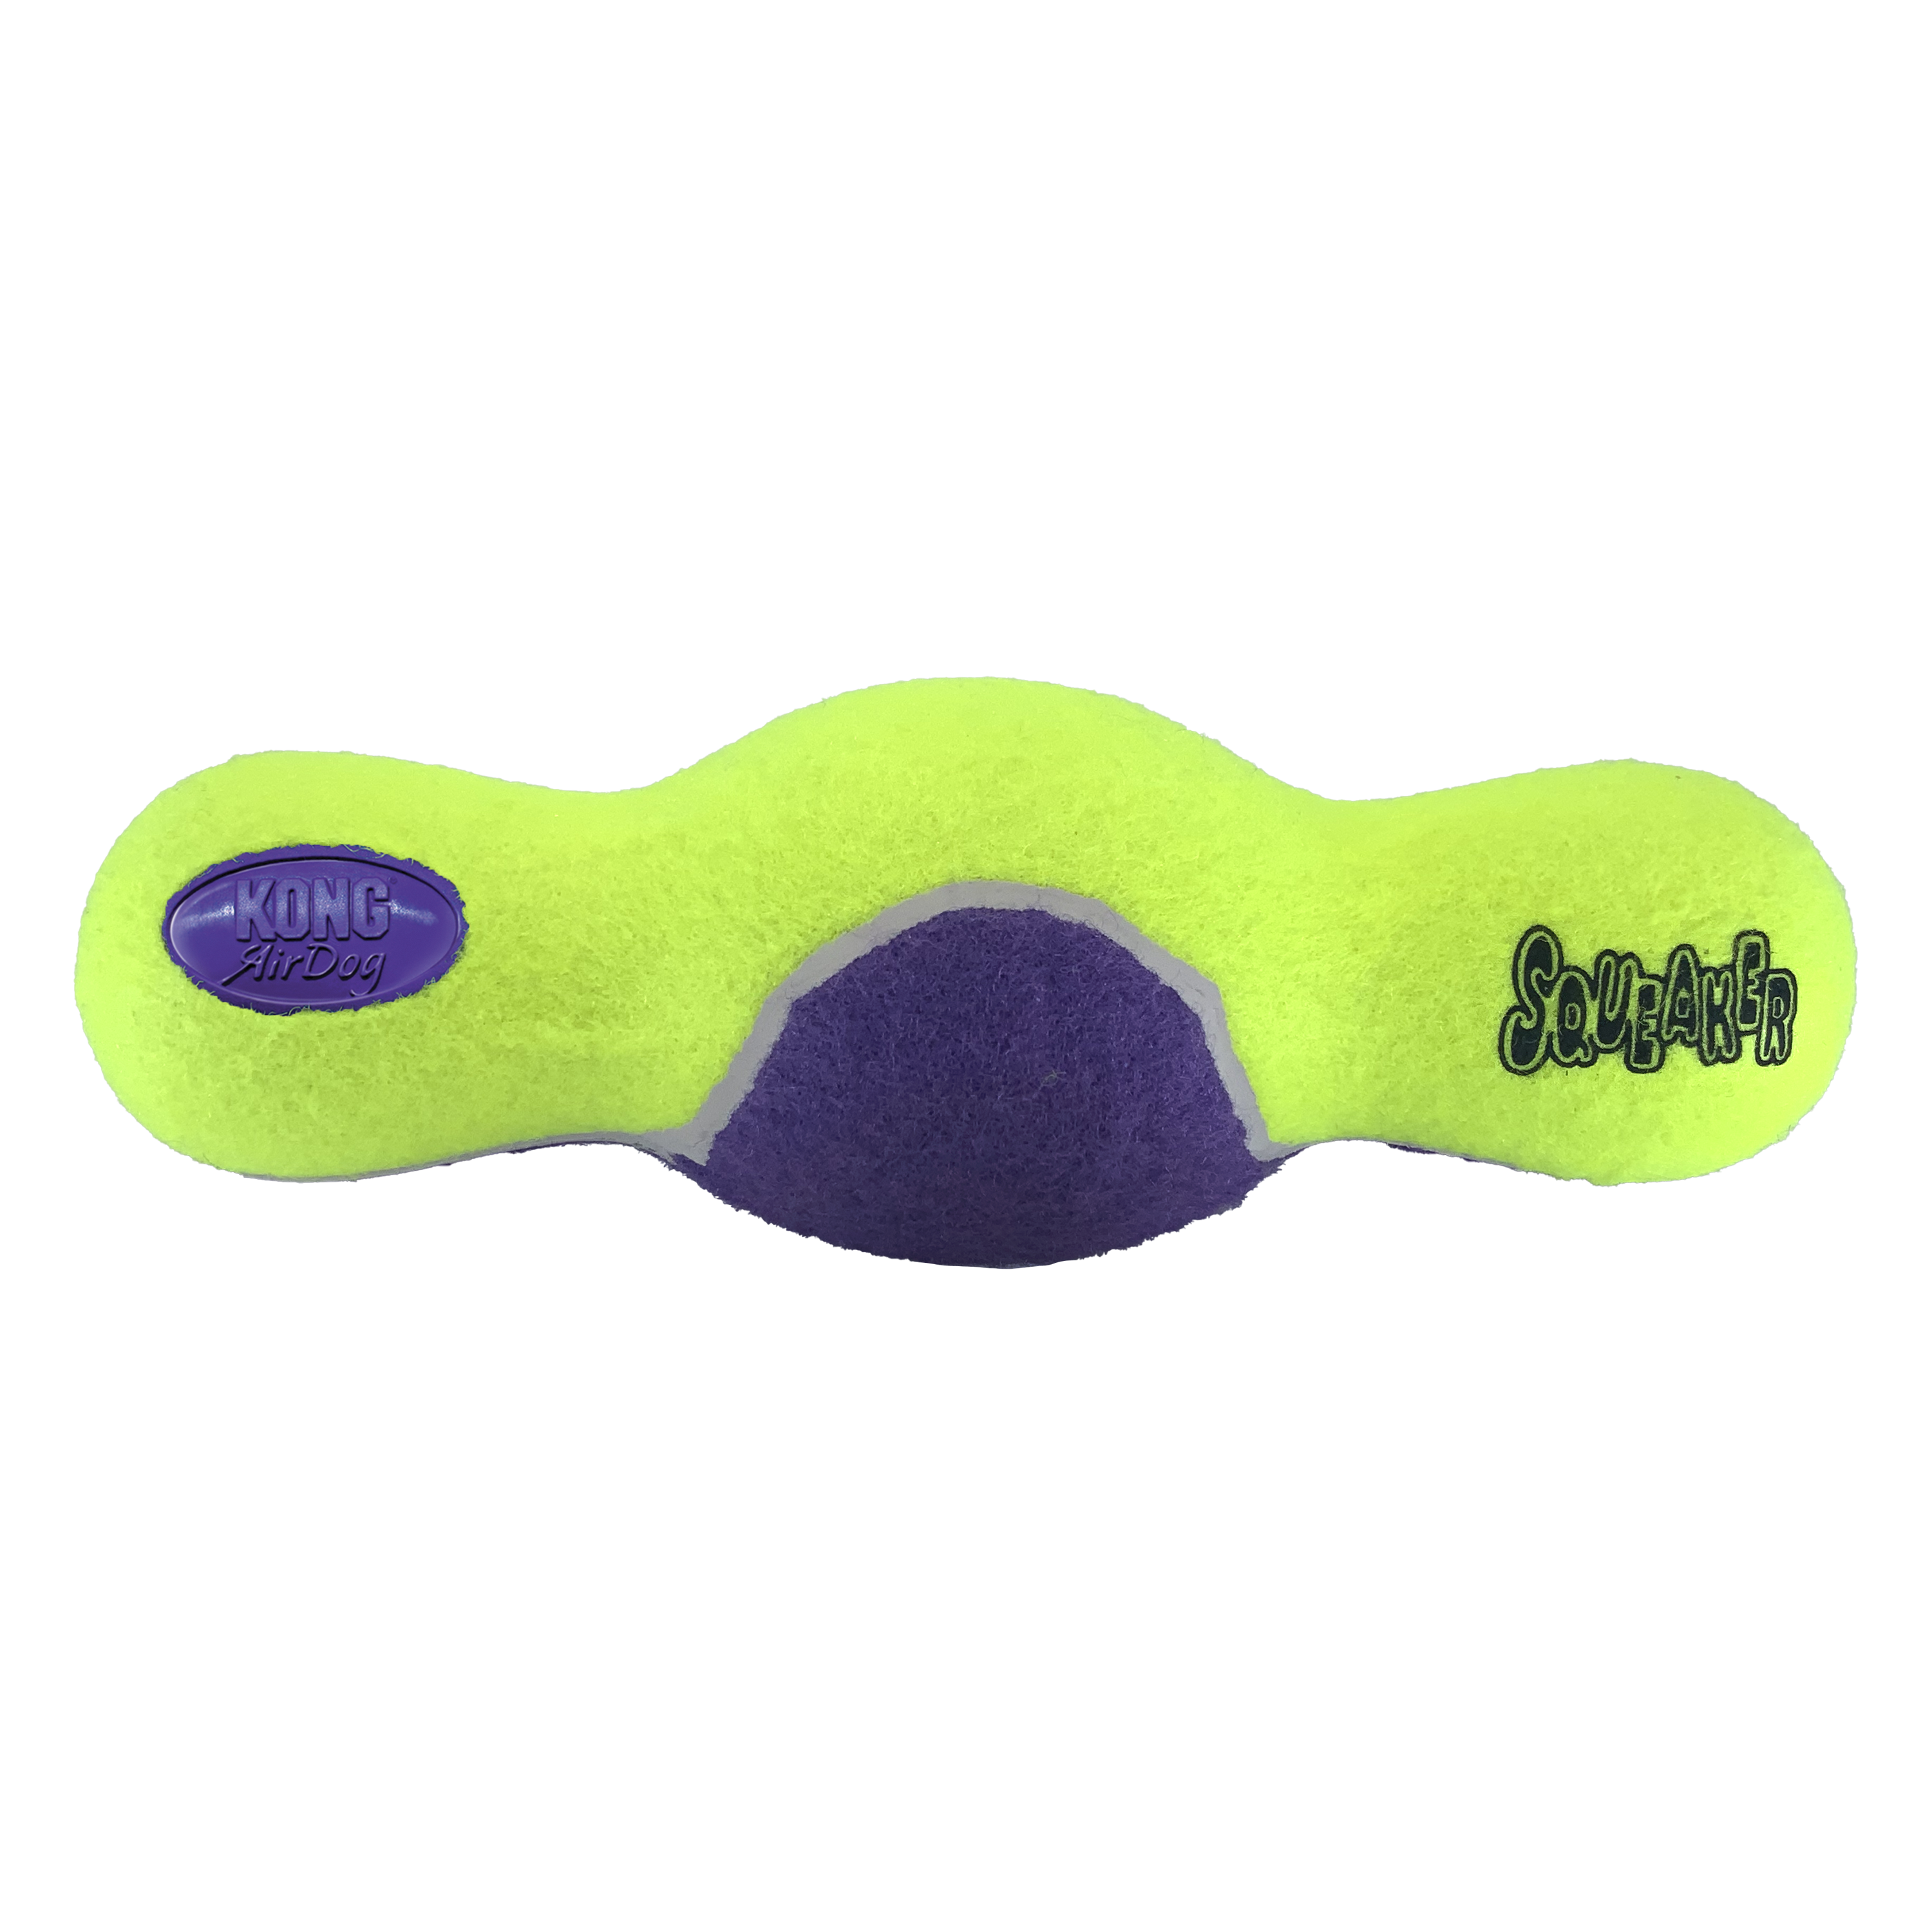 AirDog Squeaker Roller offpack produktbillede